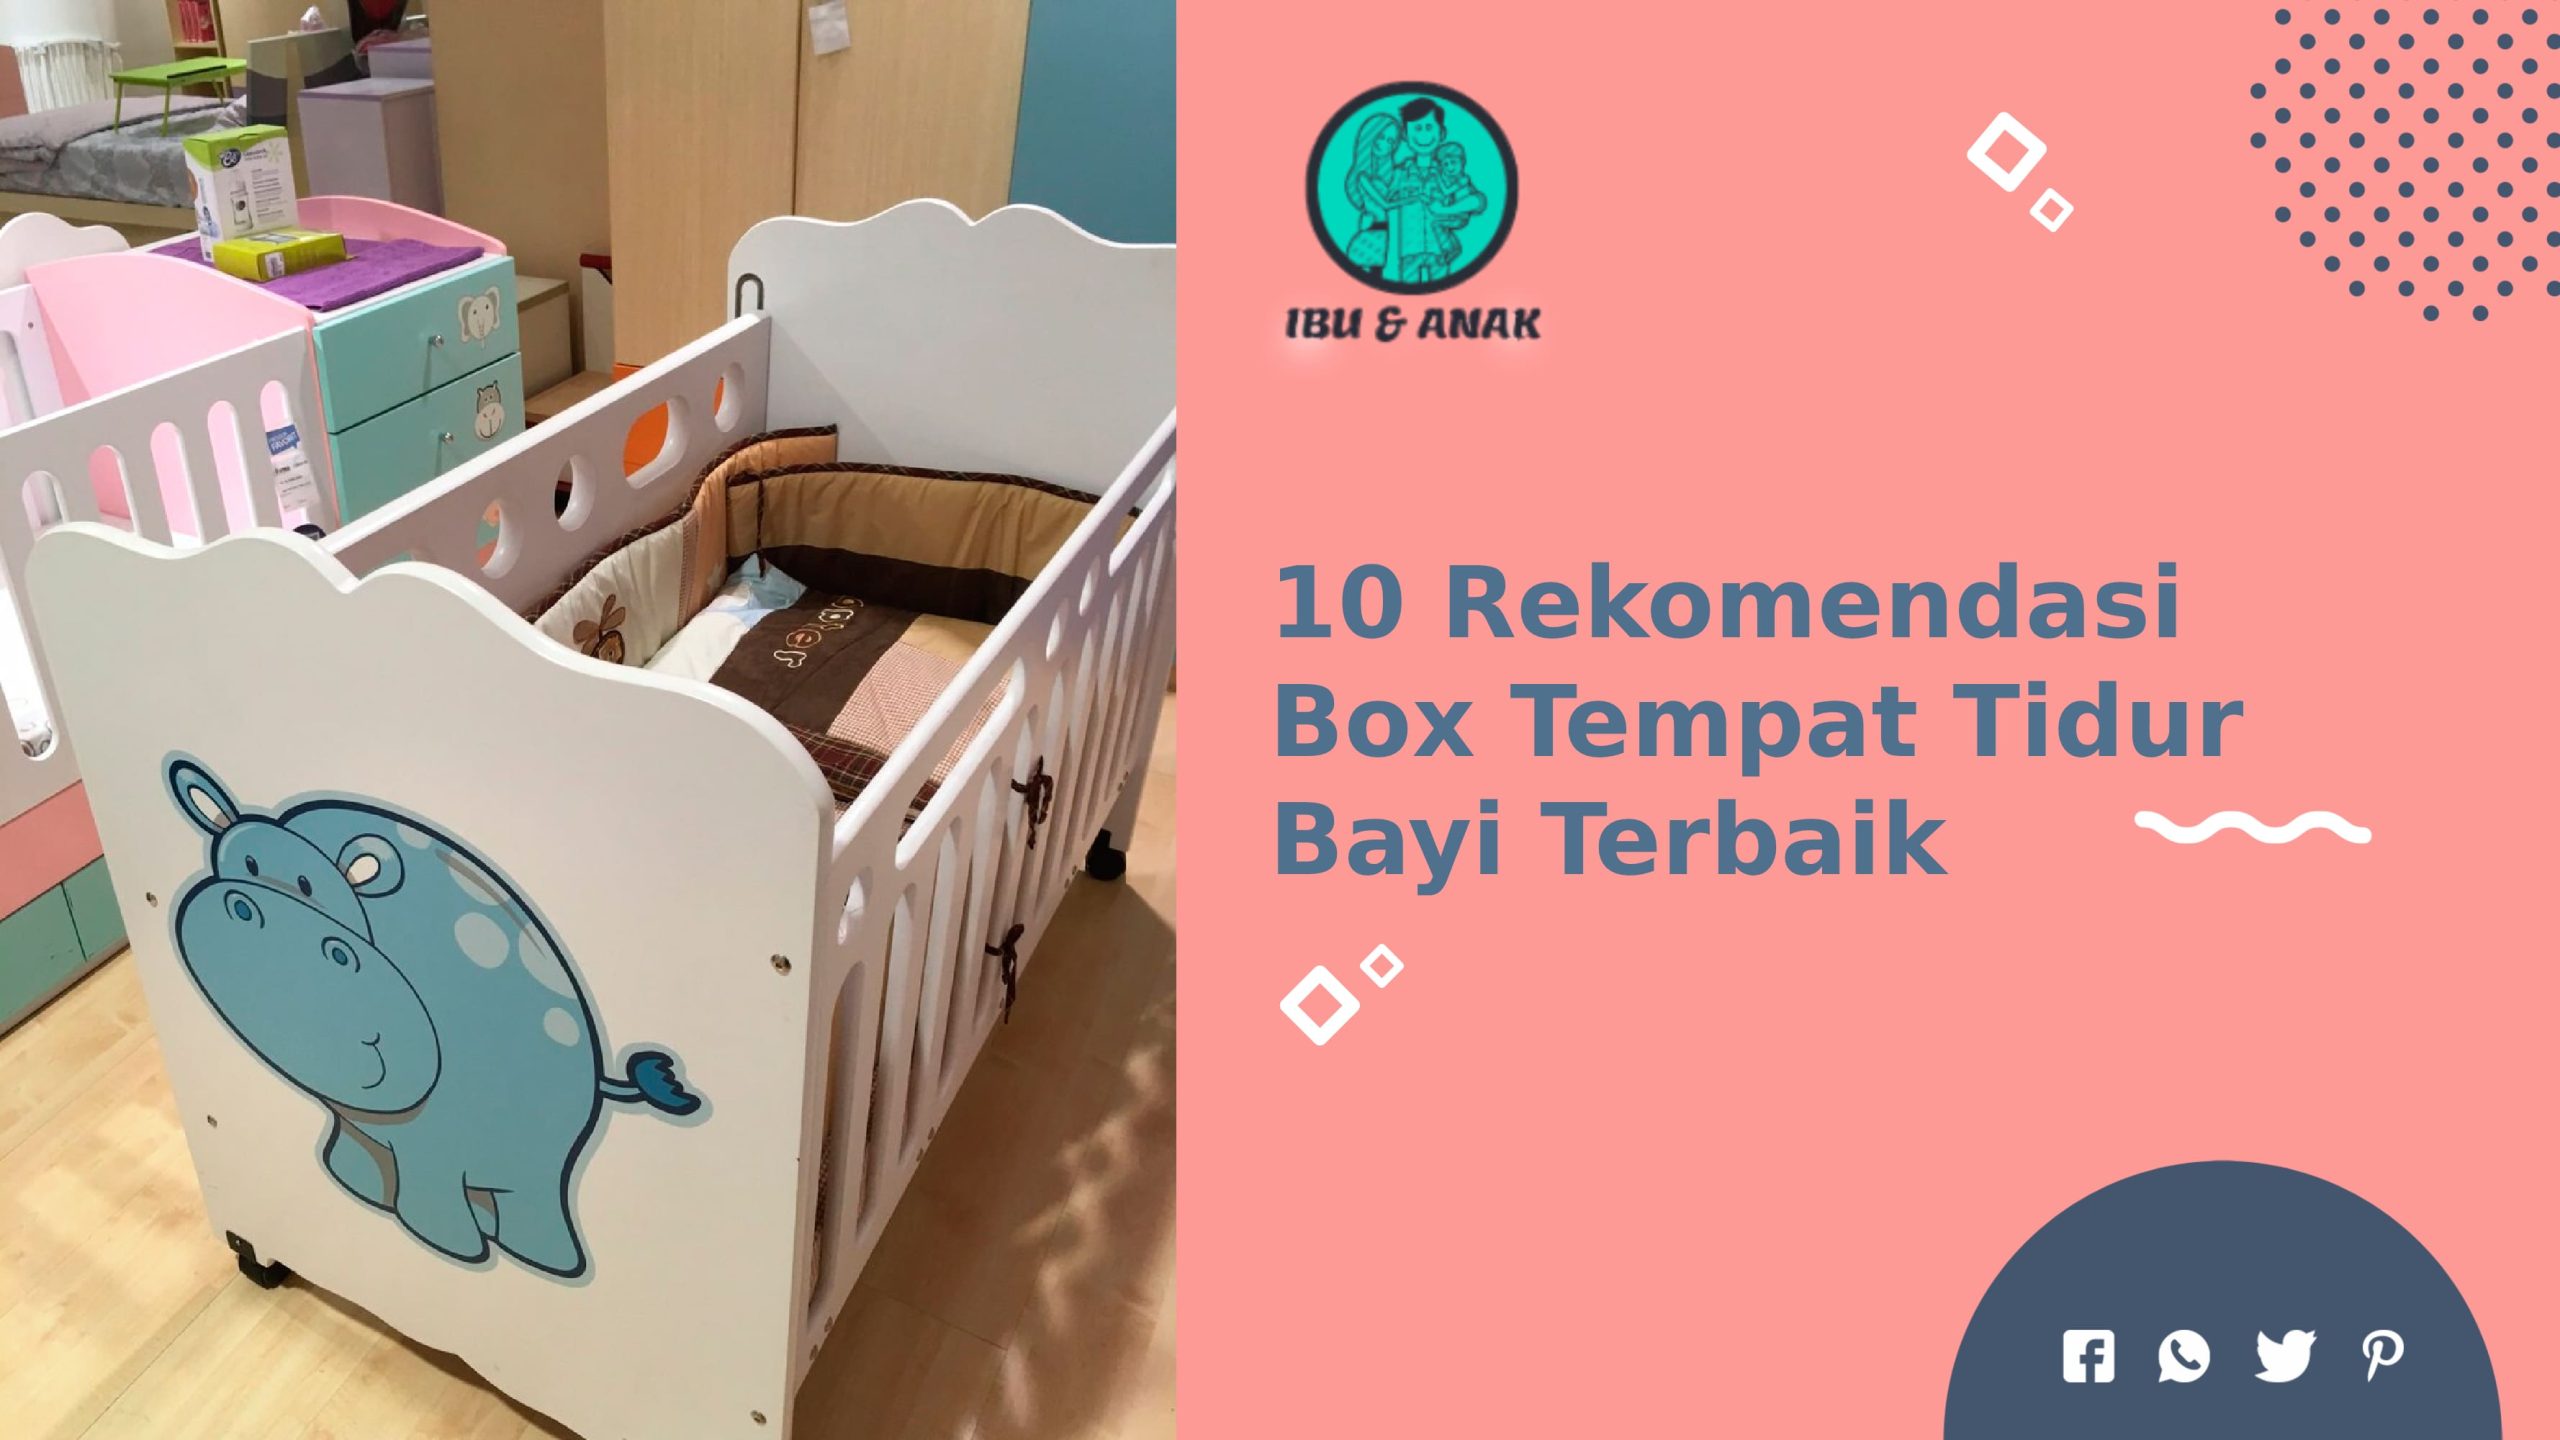 Rekomendasi Box Tempat tidur Bayi